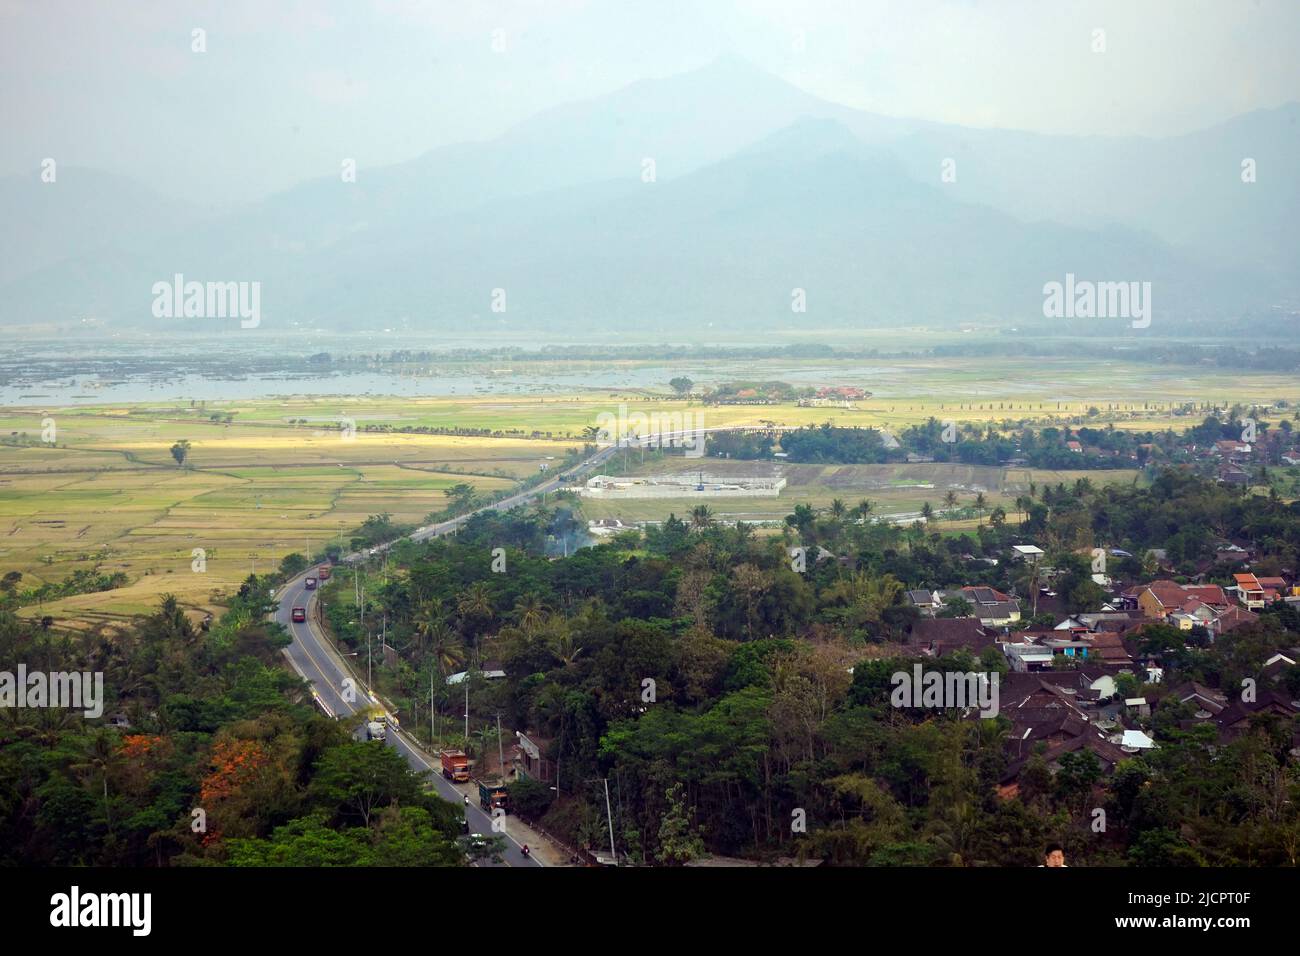 Aerial view of Rawa Pening, Ambarawa, Indonesia Stock Photo